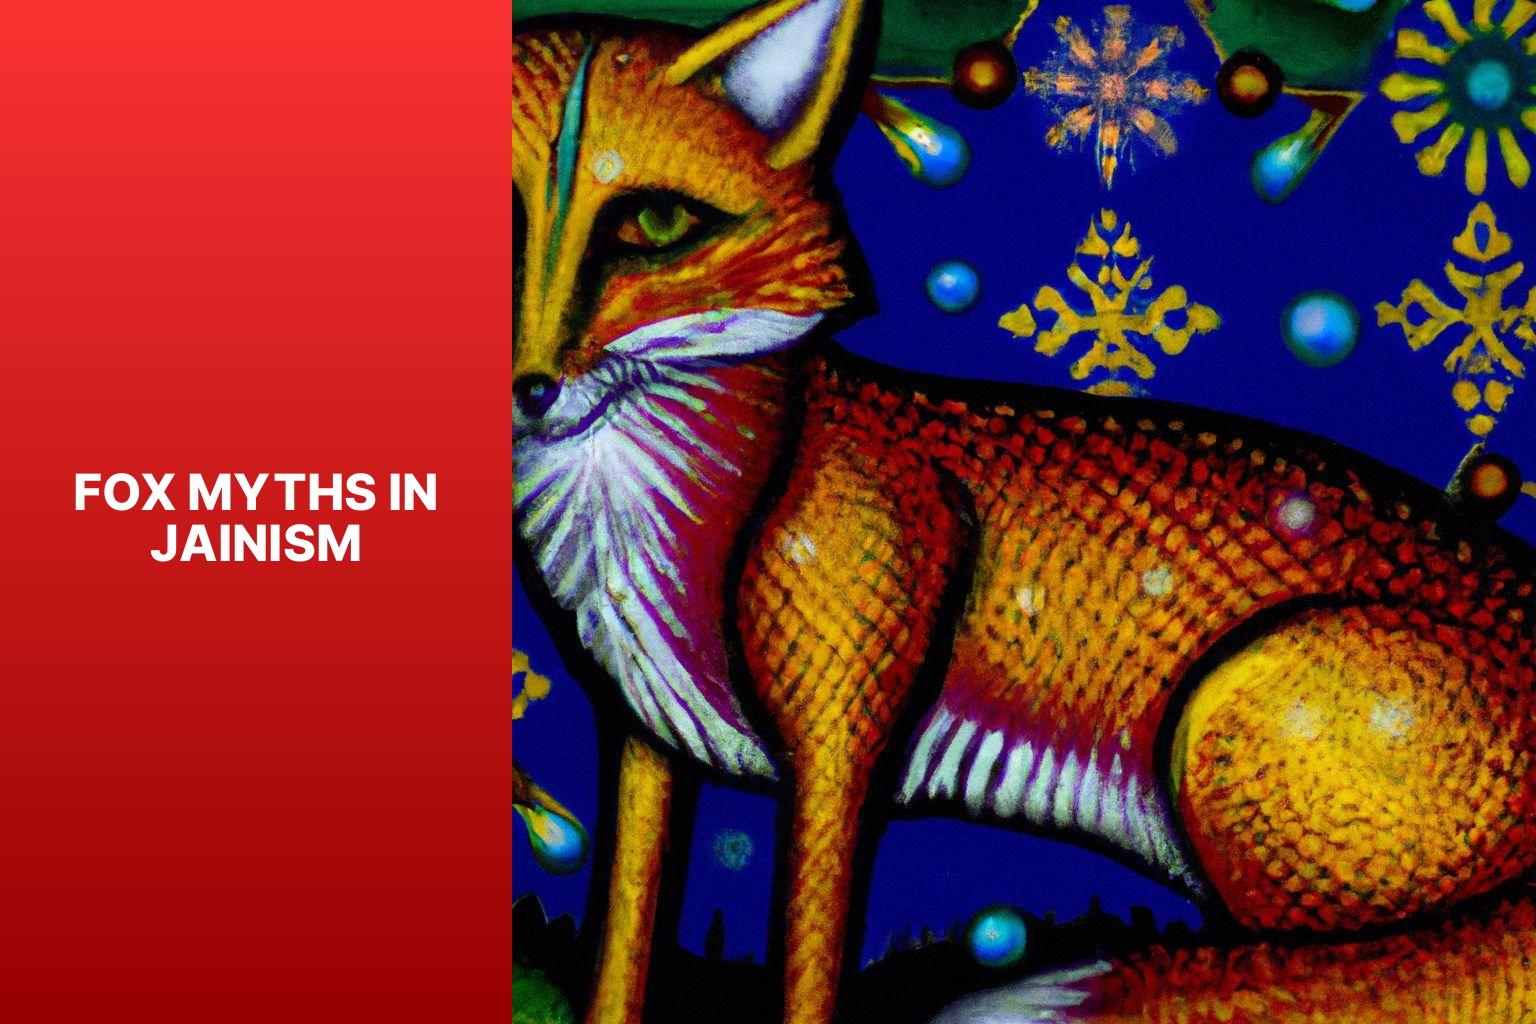 Fox Myths in Jainism - Fox Myths in Jainism 